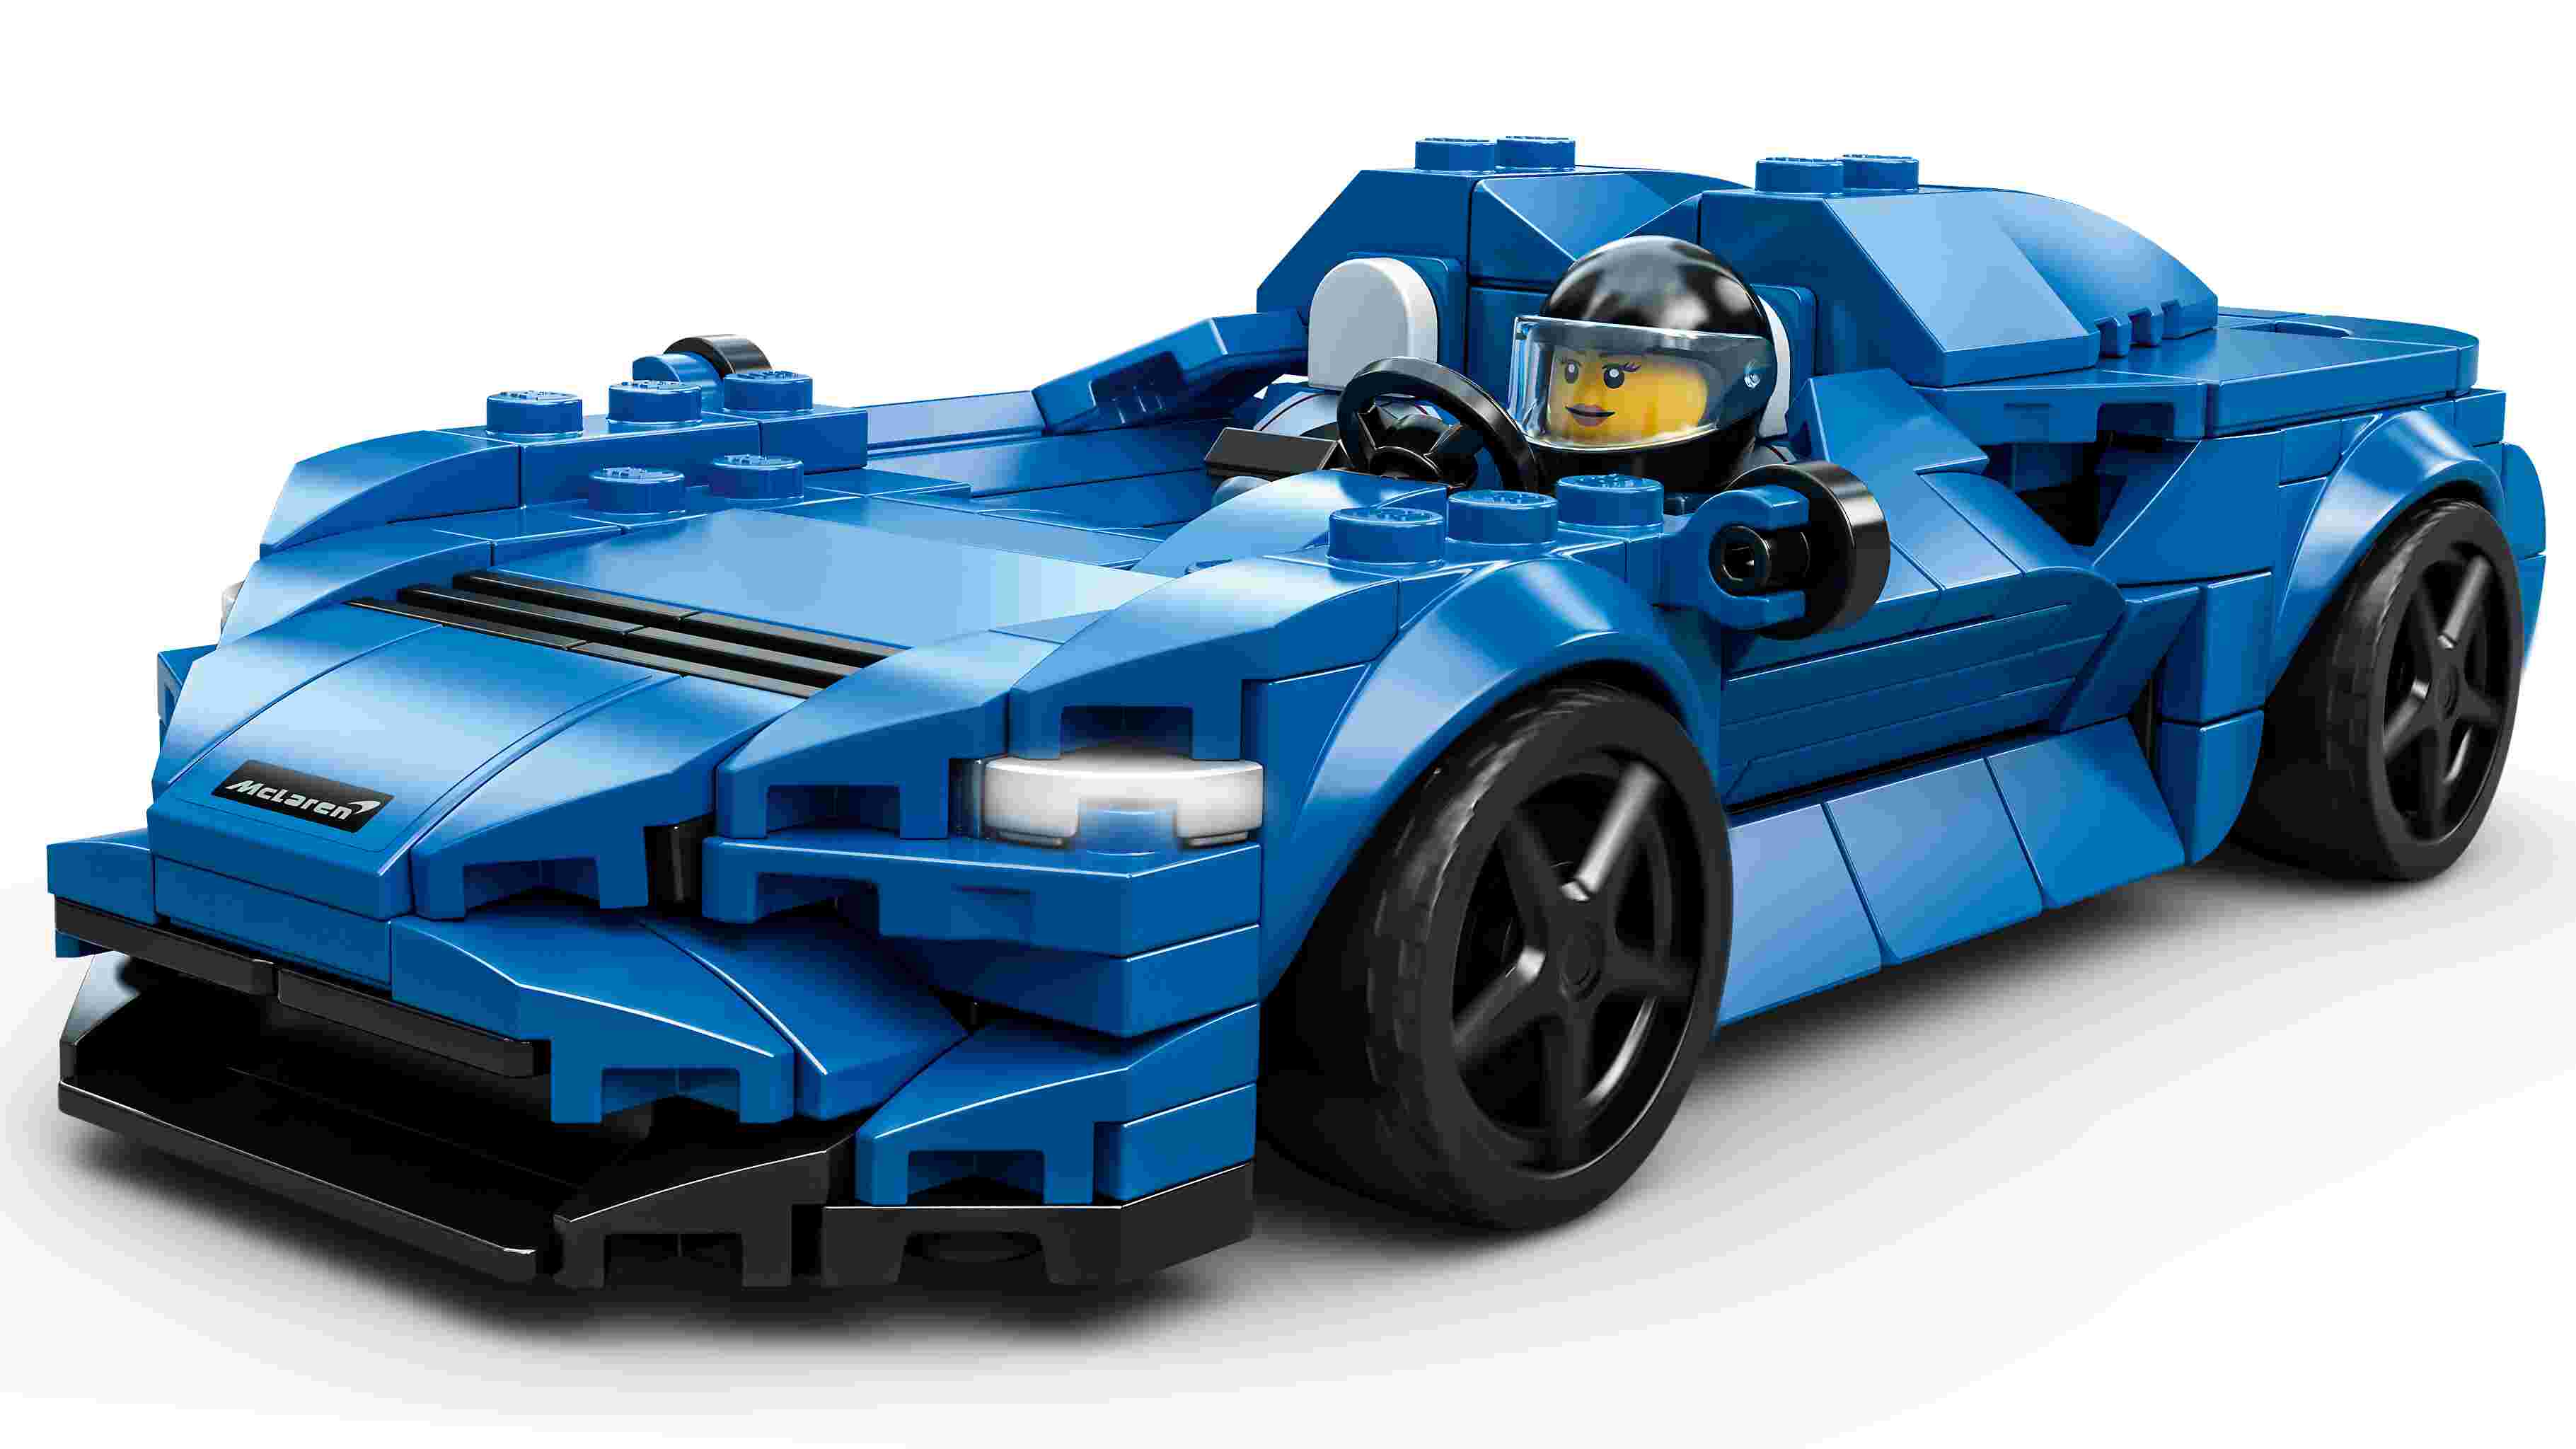 LEGO 76902 Speed Champions McLaren Elva Rennwagen, Modellauto zum selber Bauen